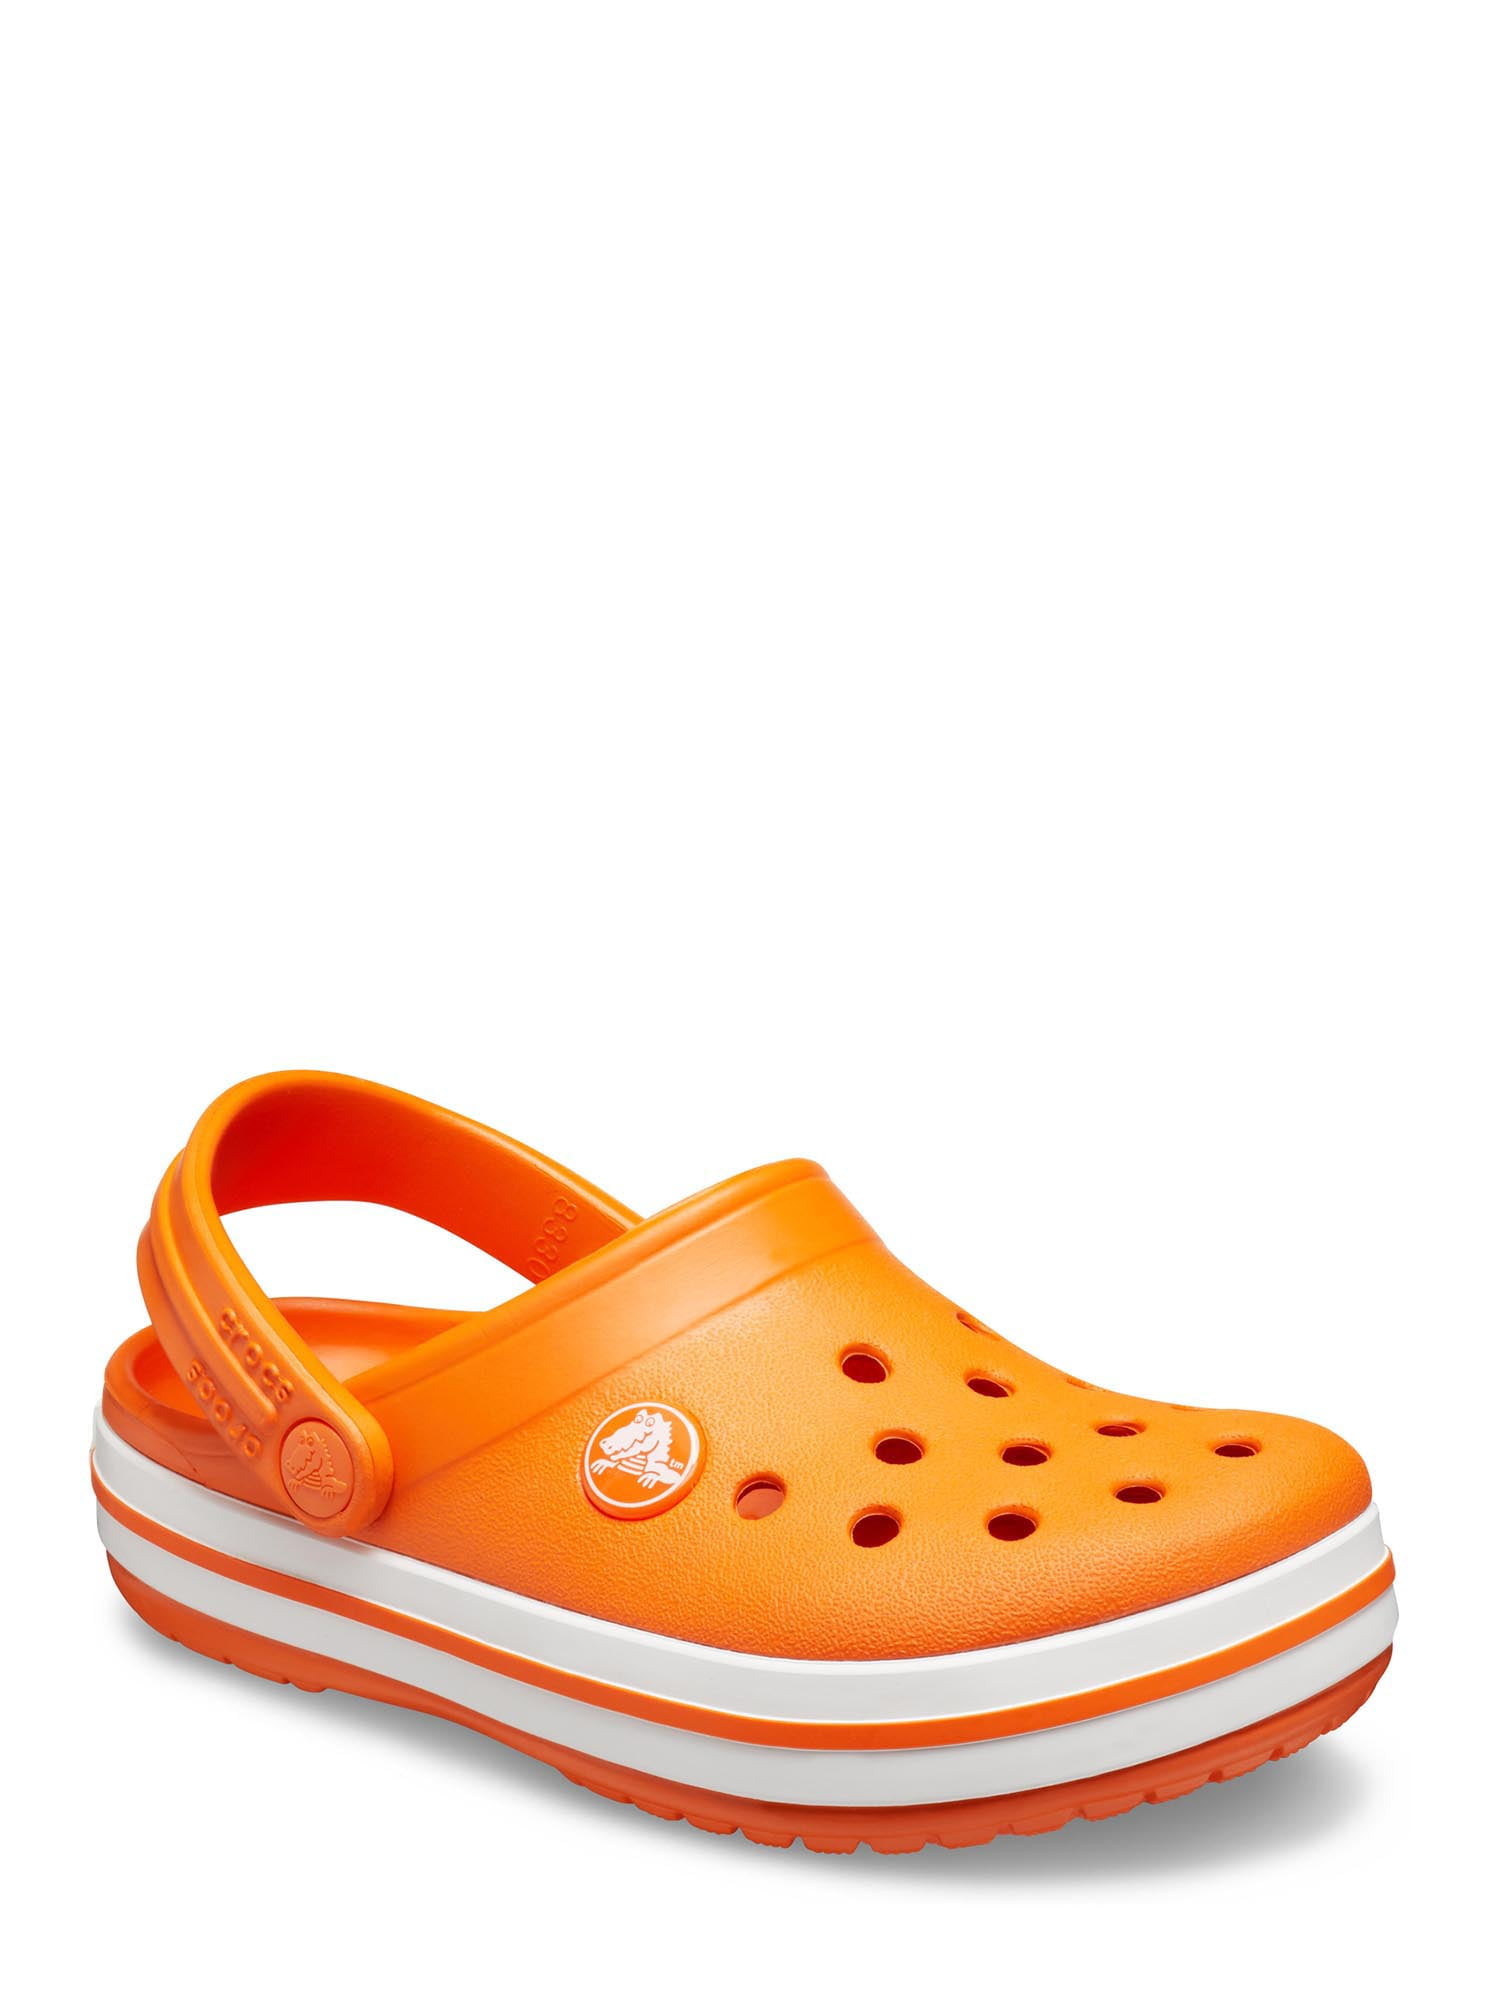 orange kids crocs